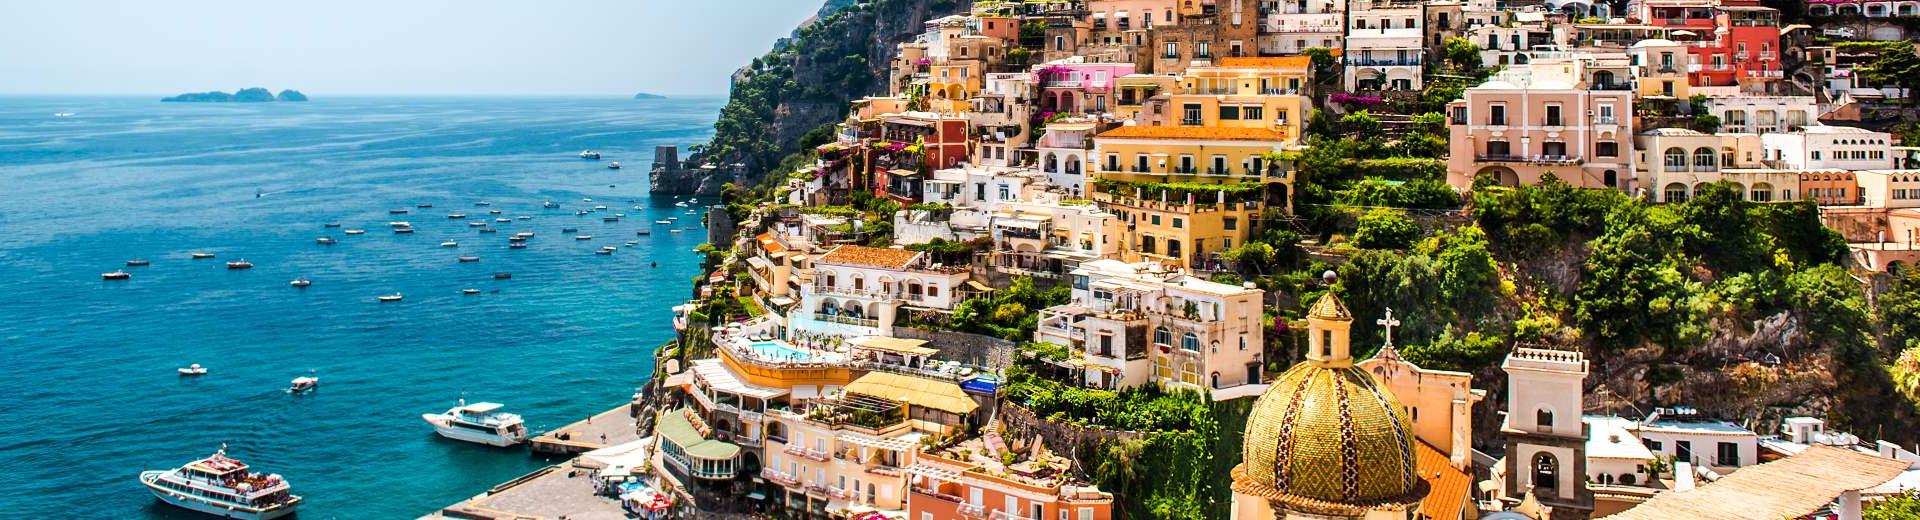 Ferienwohnungen & Ferienhäuser für Urlaub am Golf von Neapel - Casamundo